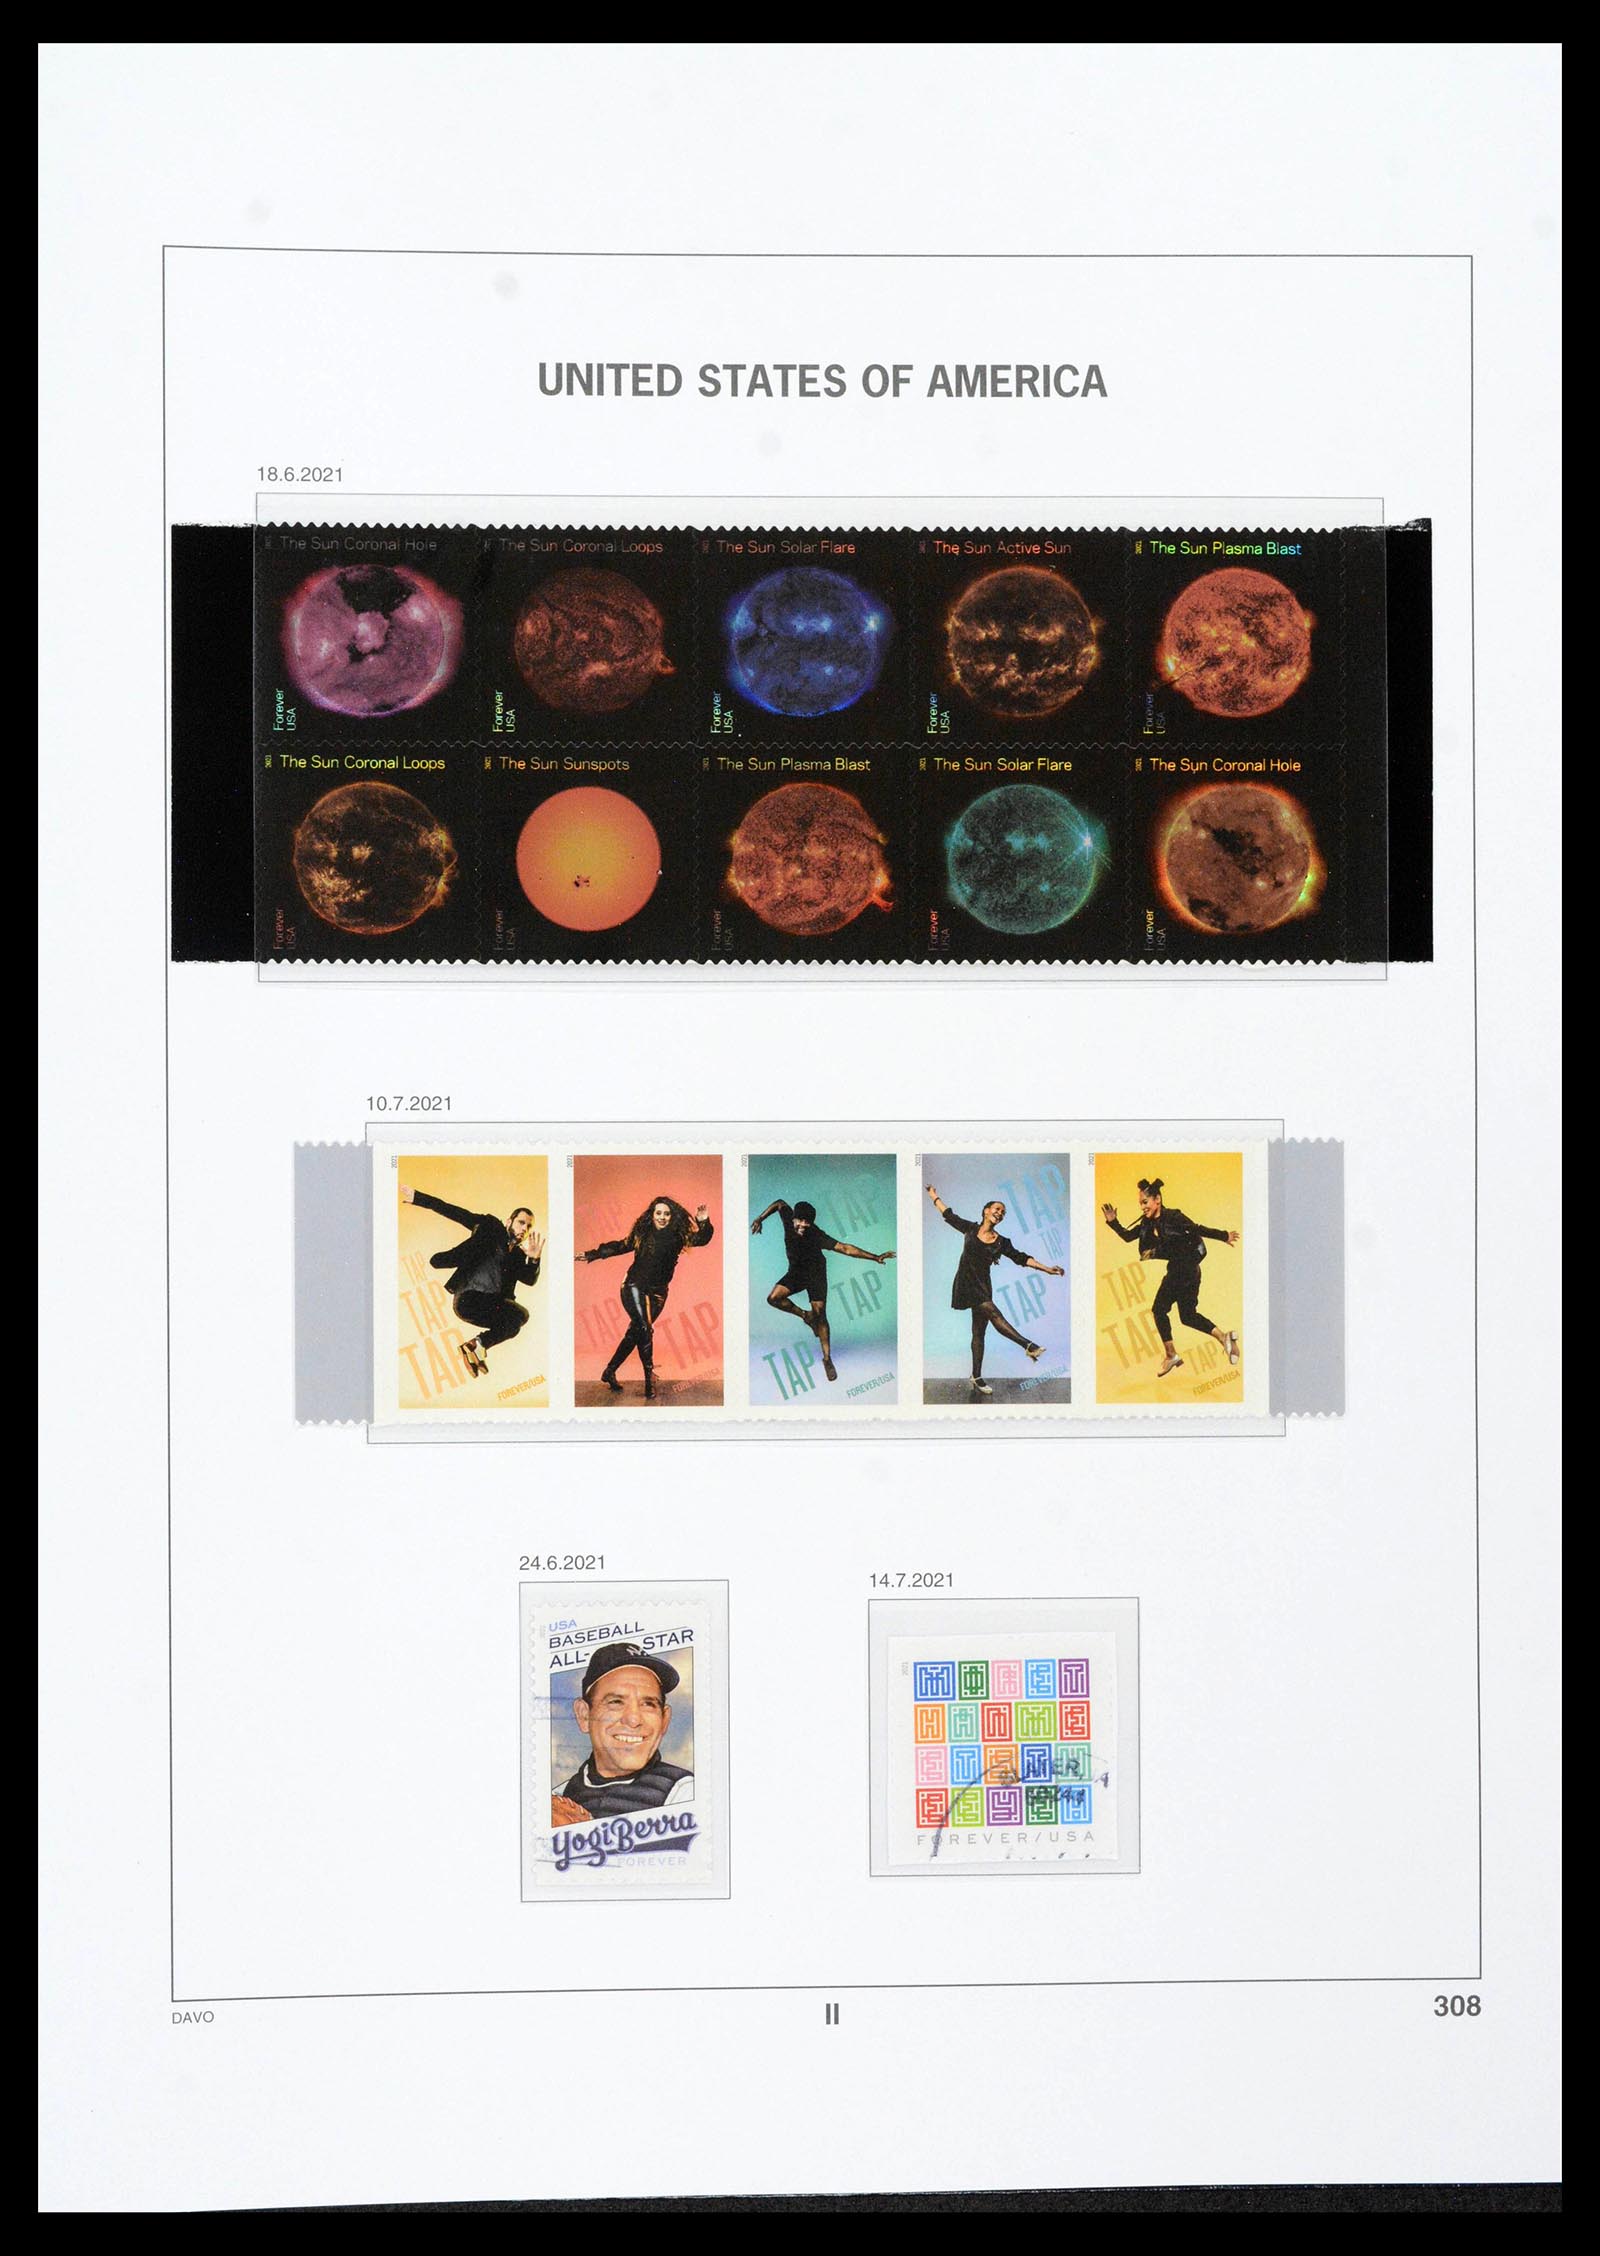 39349 0466 - Stamp collection 39349 USA 1989-2021!